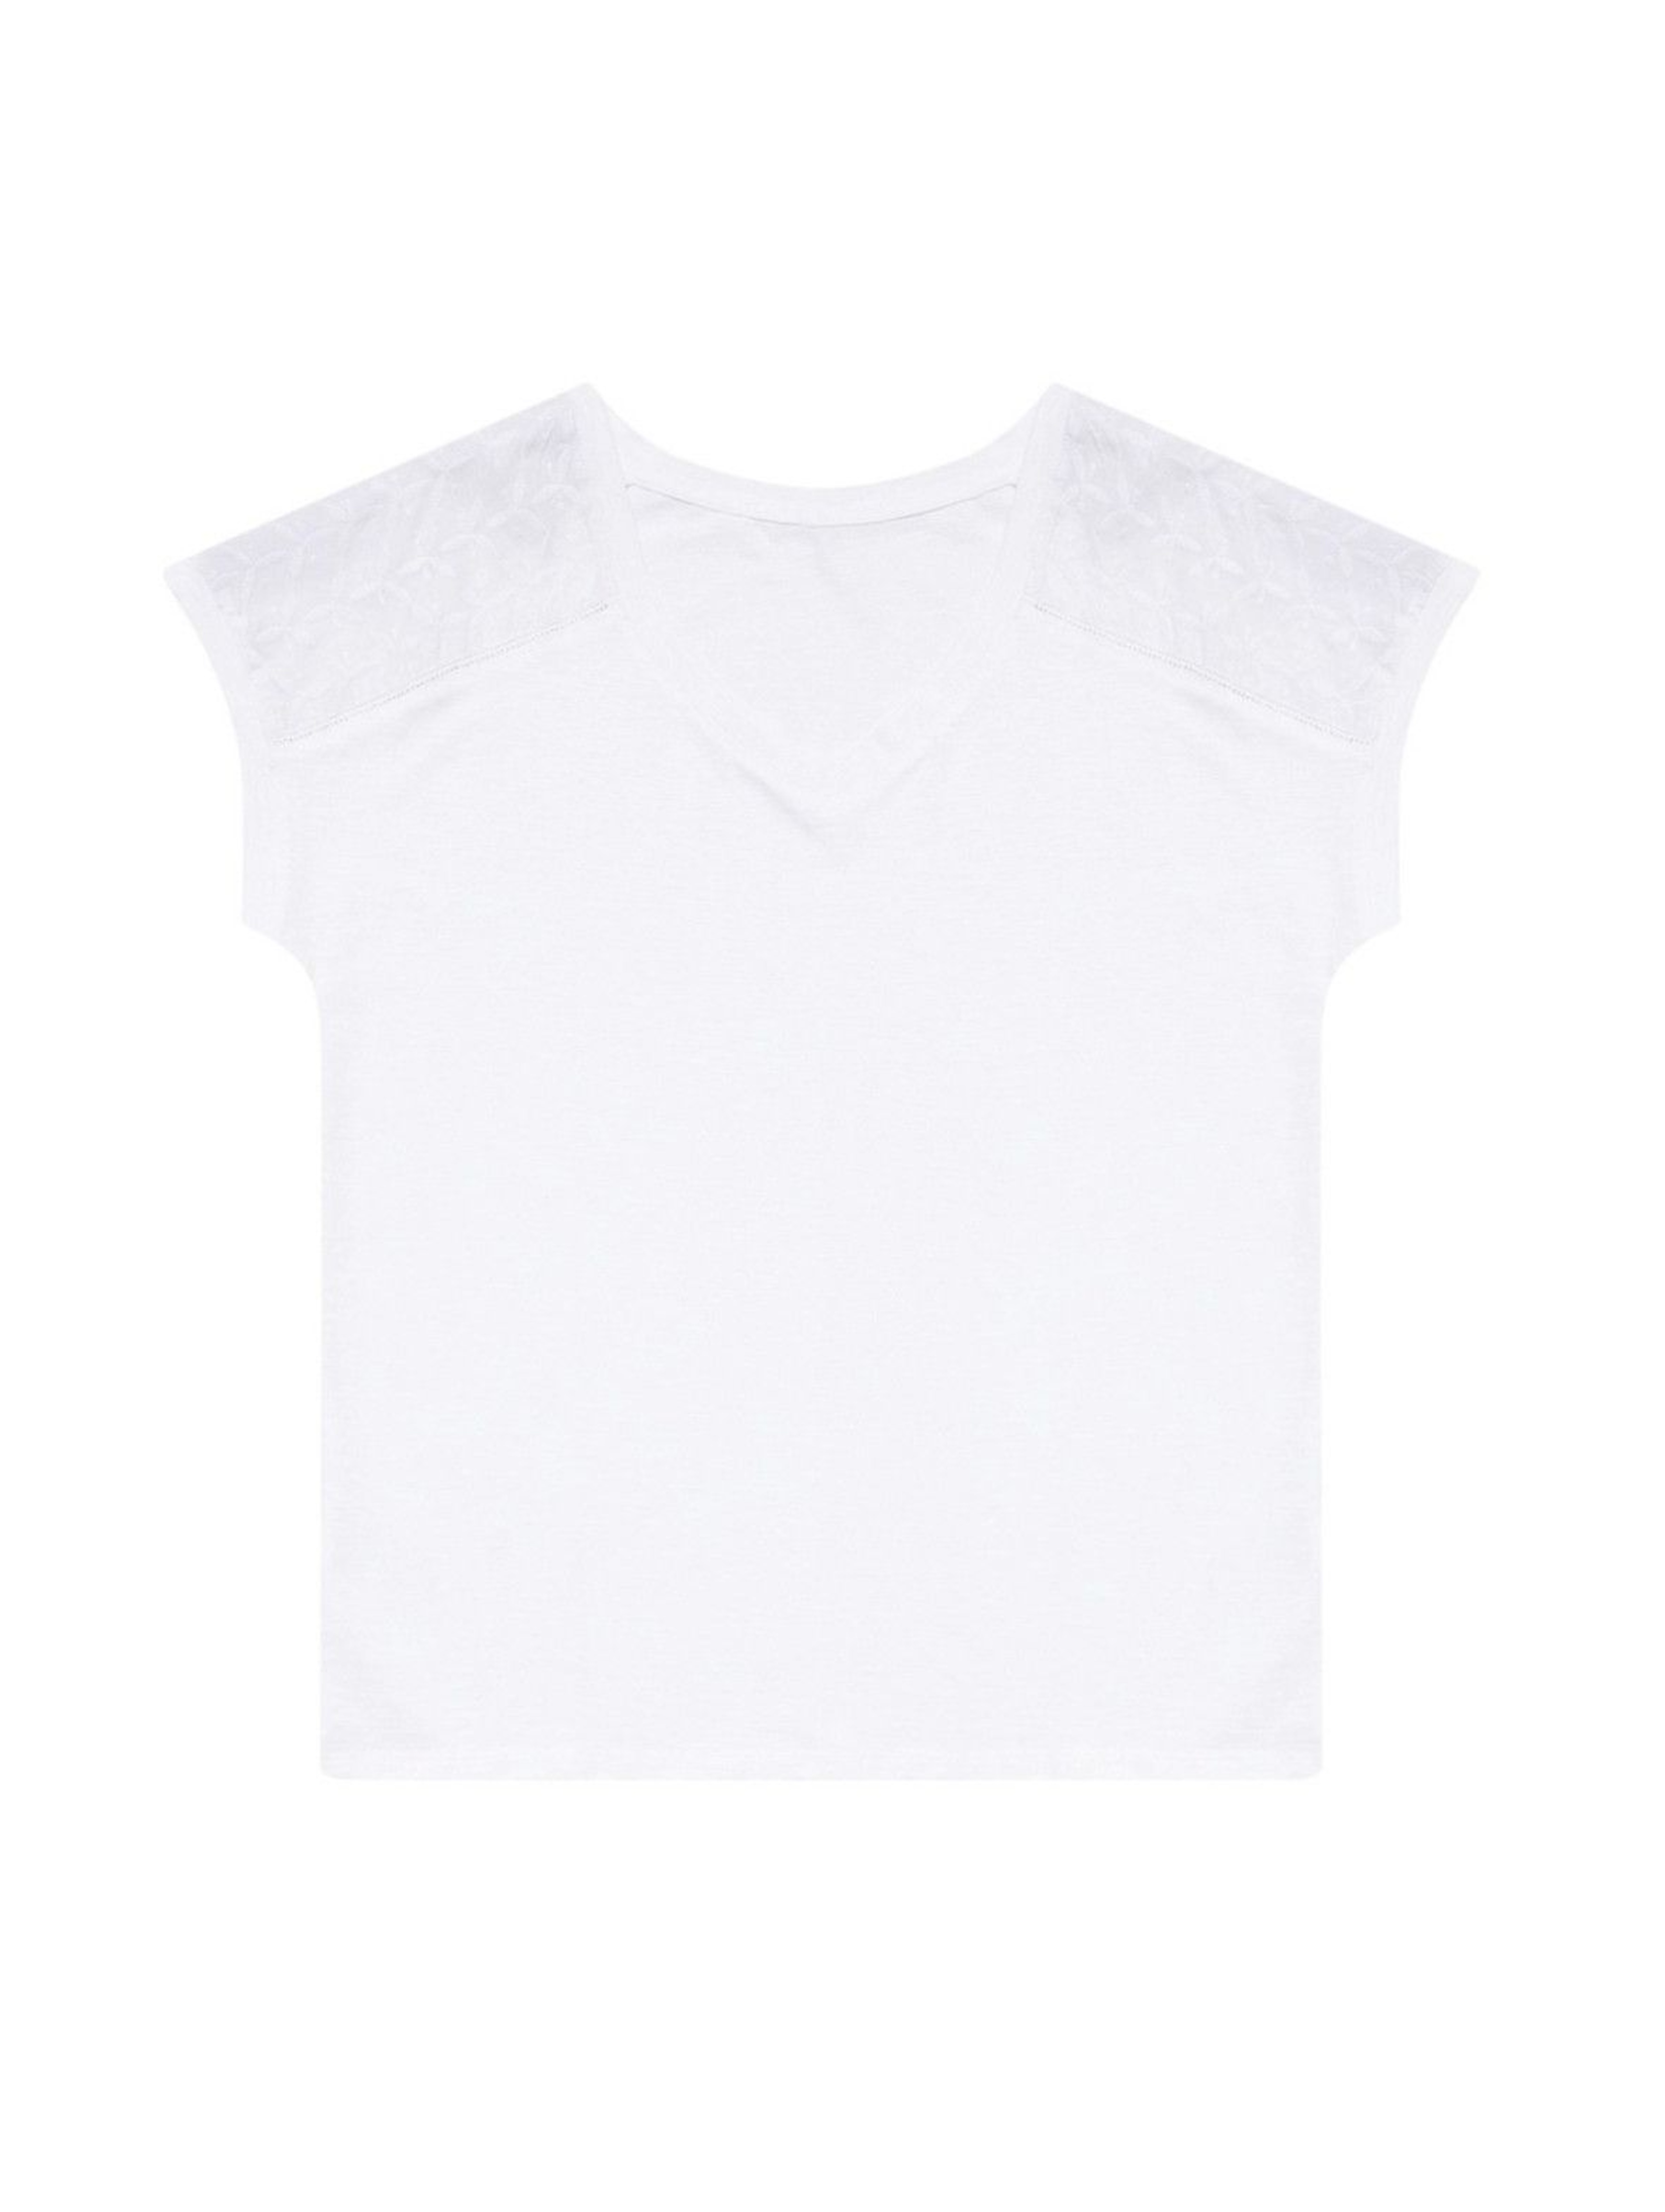 Bawełniany biały T-shirt damski na krótki rękaw z ażurowym zdobieniem